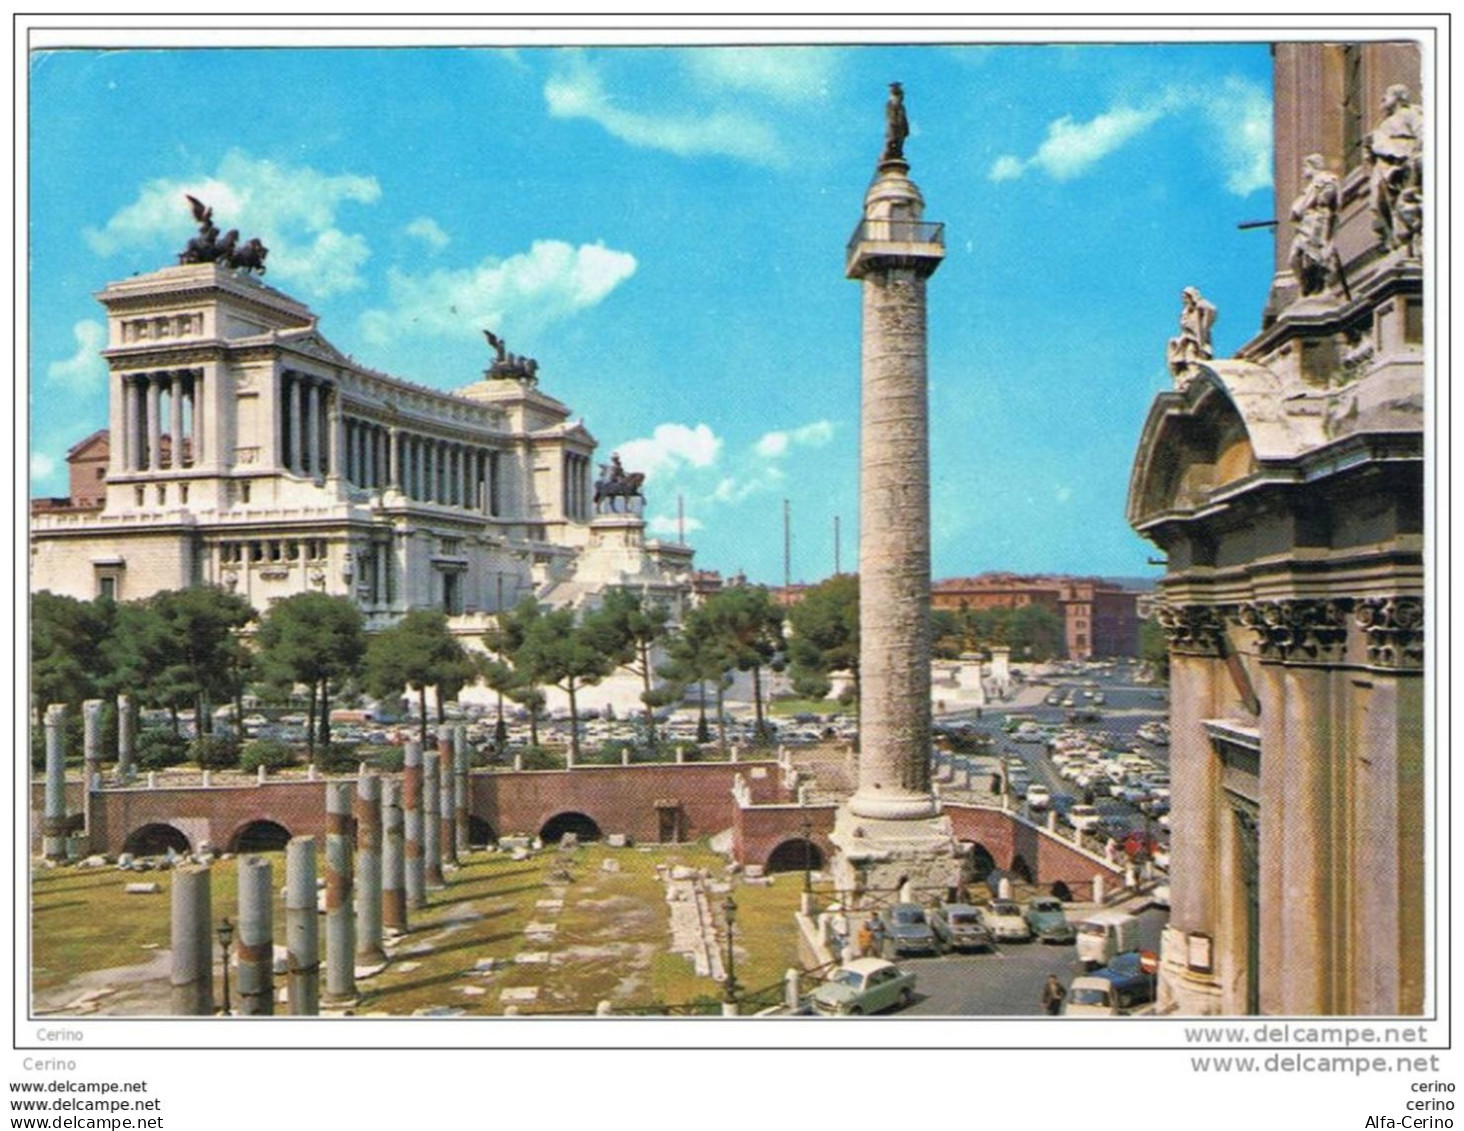 ROMA:   MONUMENTO  A  VITTORIO  EMAN. II°  E  COLONNA  TRAIANA  -  PER  LA  SVIZZERA  -  FG - Altare Della Patria